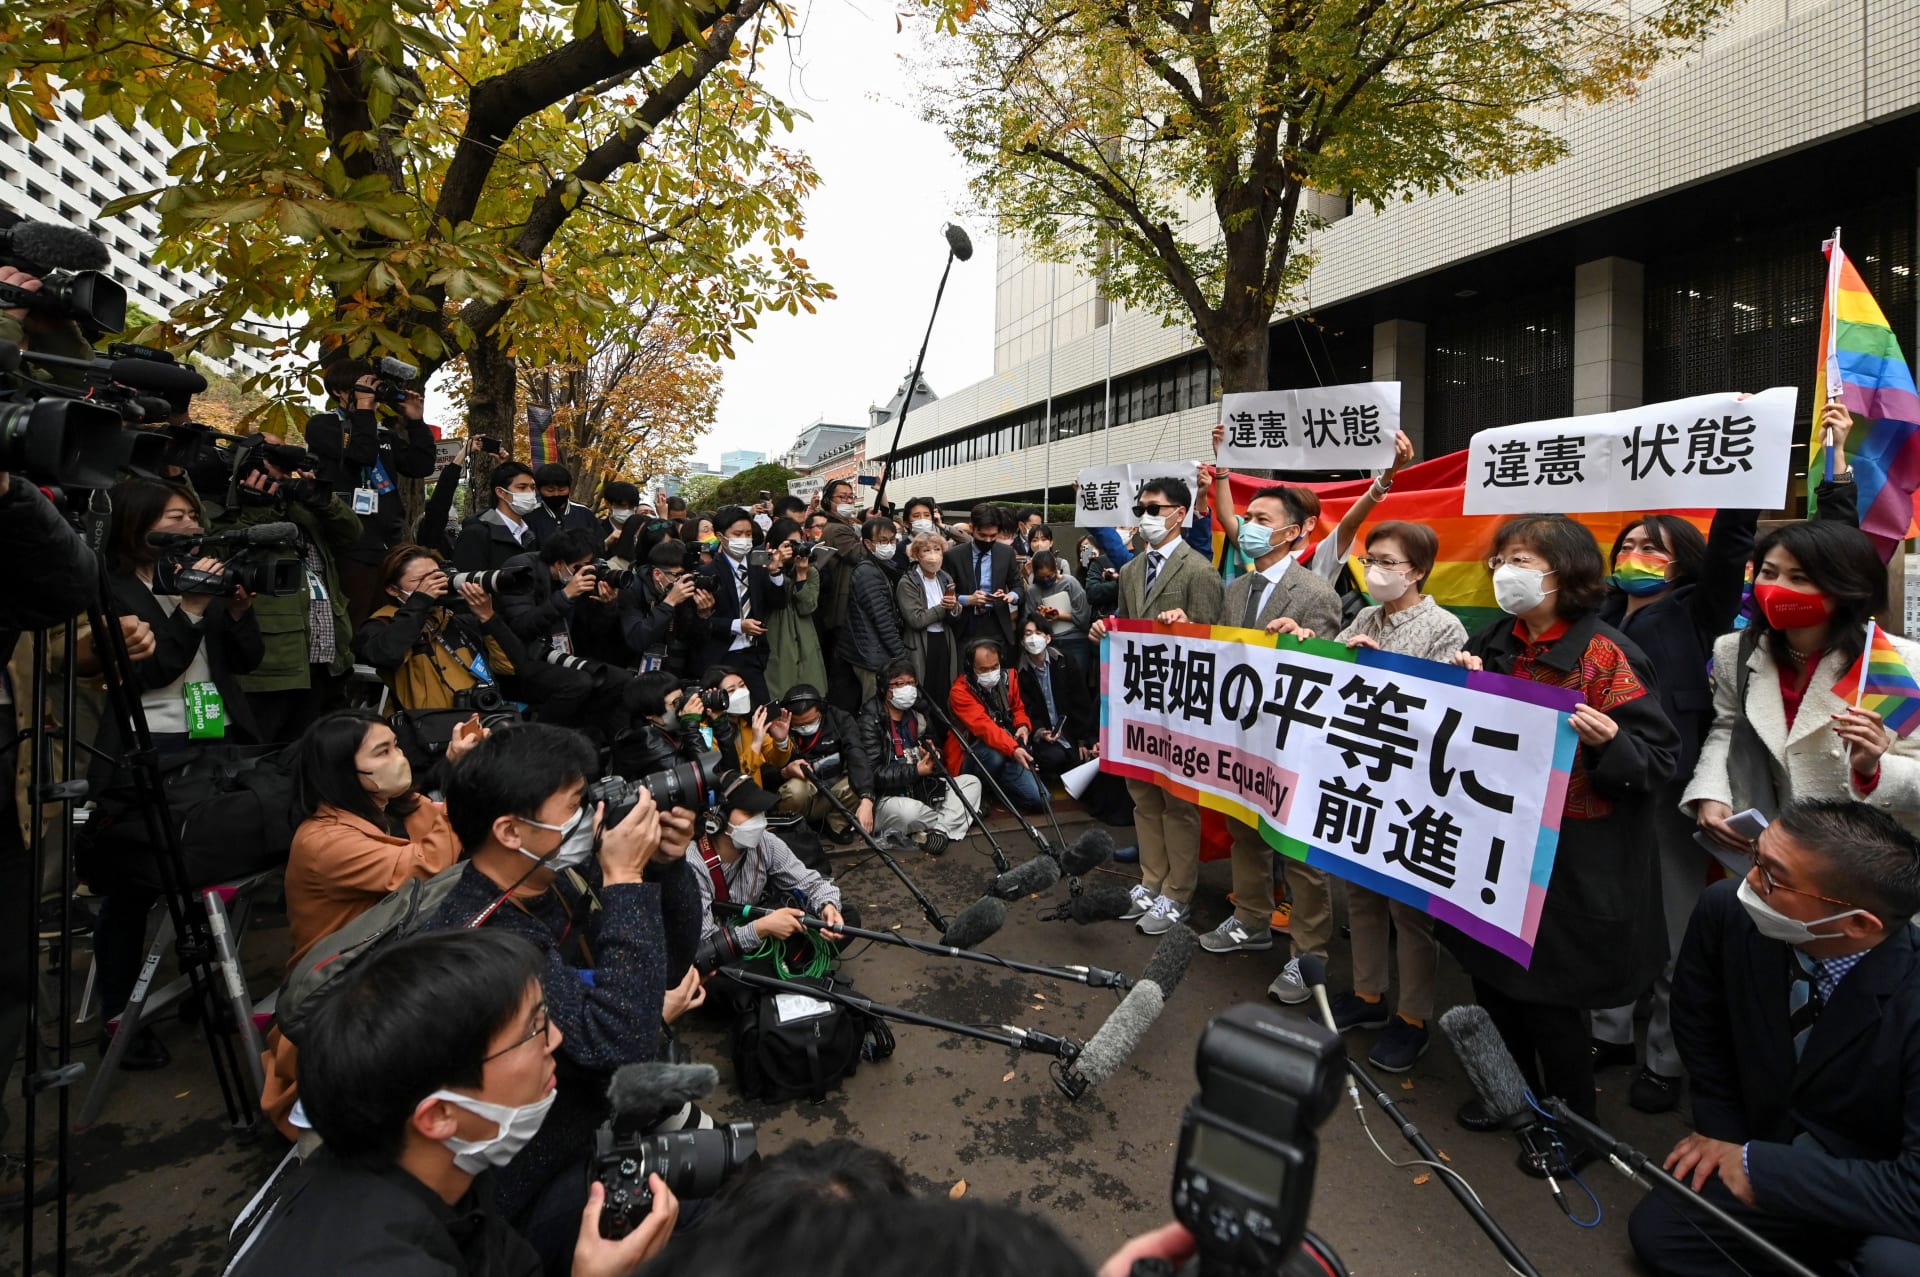 للمرة الثانية.. محكمة يابانية تحكم بأن عدم السماح بزواج المثليين غير دستوري